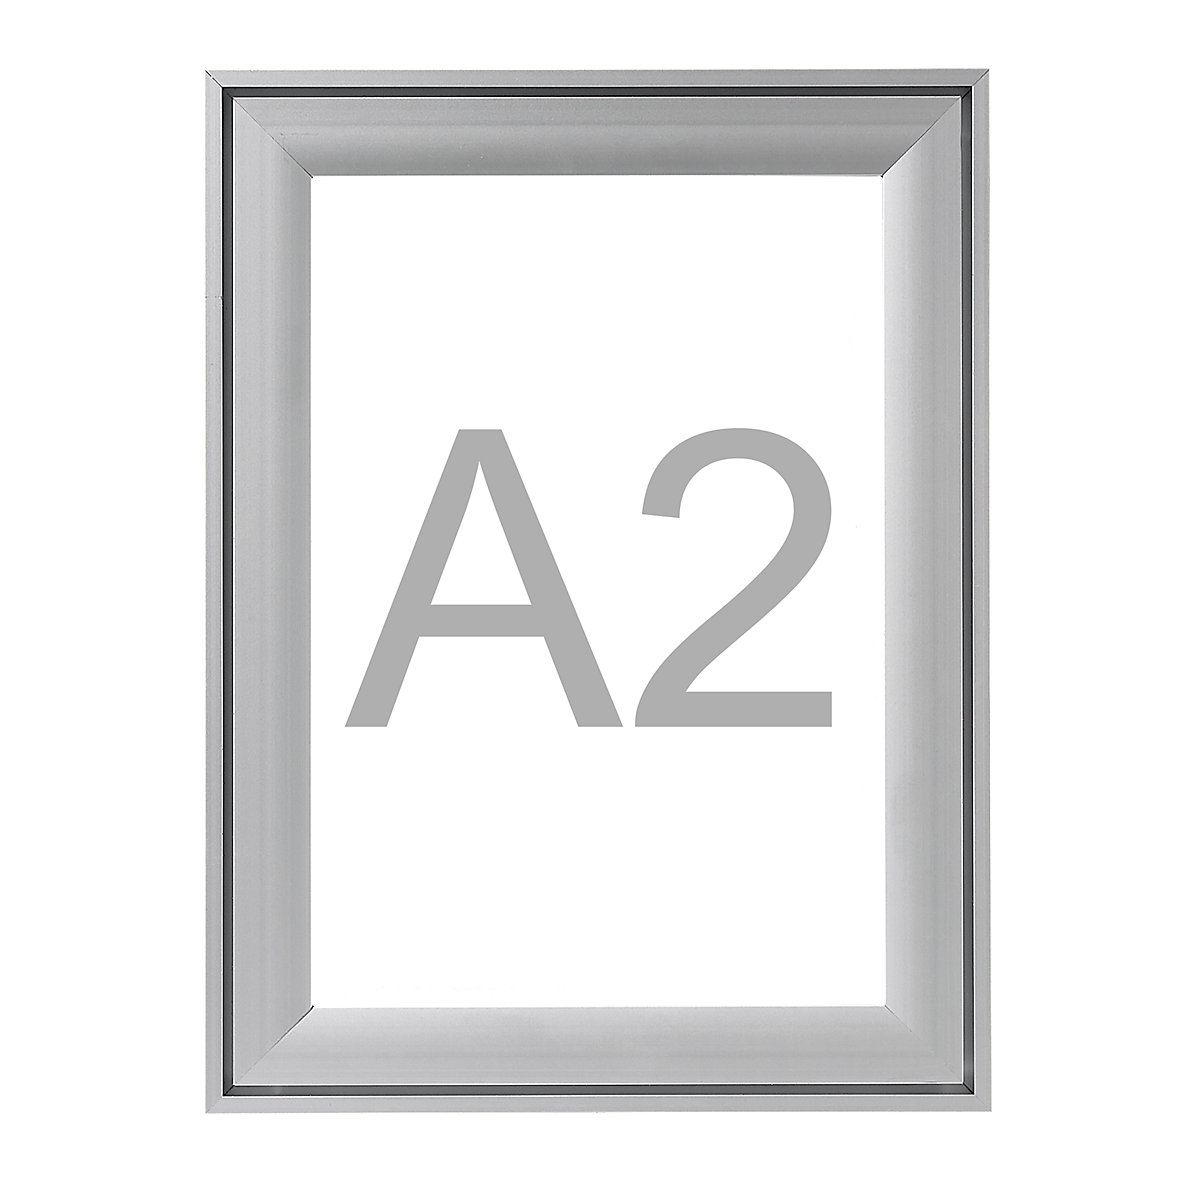 Premium-klapframe, aluminium profiel, VE = 2 stuks, voor A2, h x b = 648 x 474 mm-5